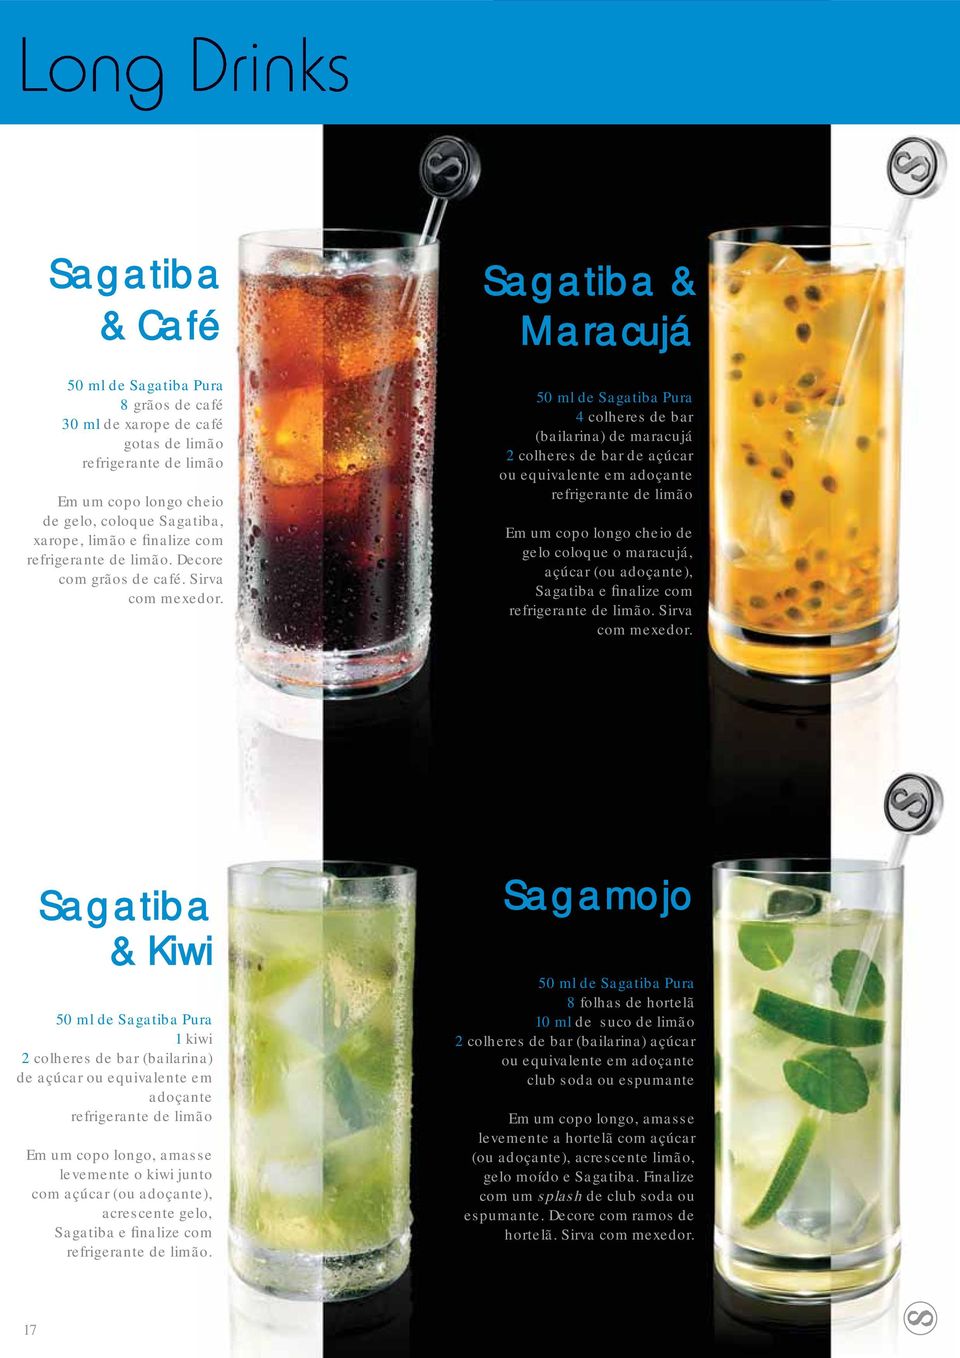 Sagatiba & Maracujá 4 colheres de bar (bailarina) de maracujá 2 colheres de bar de açúcar ou equivalente em adoçante refrigerante de limão Em um copo longo cheio de gelo coloque o maracujá, açúcar